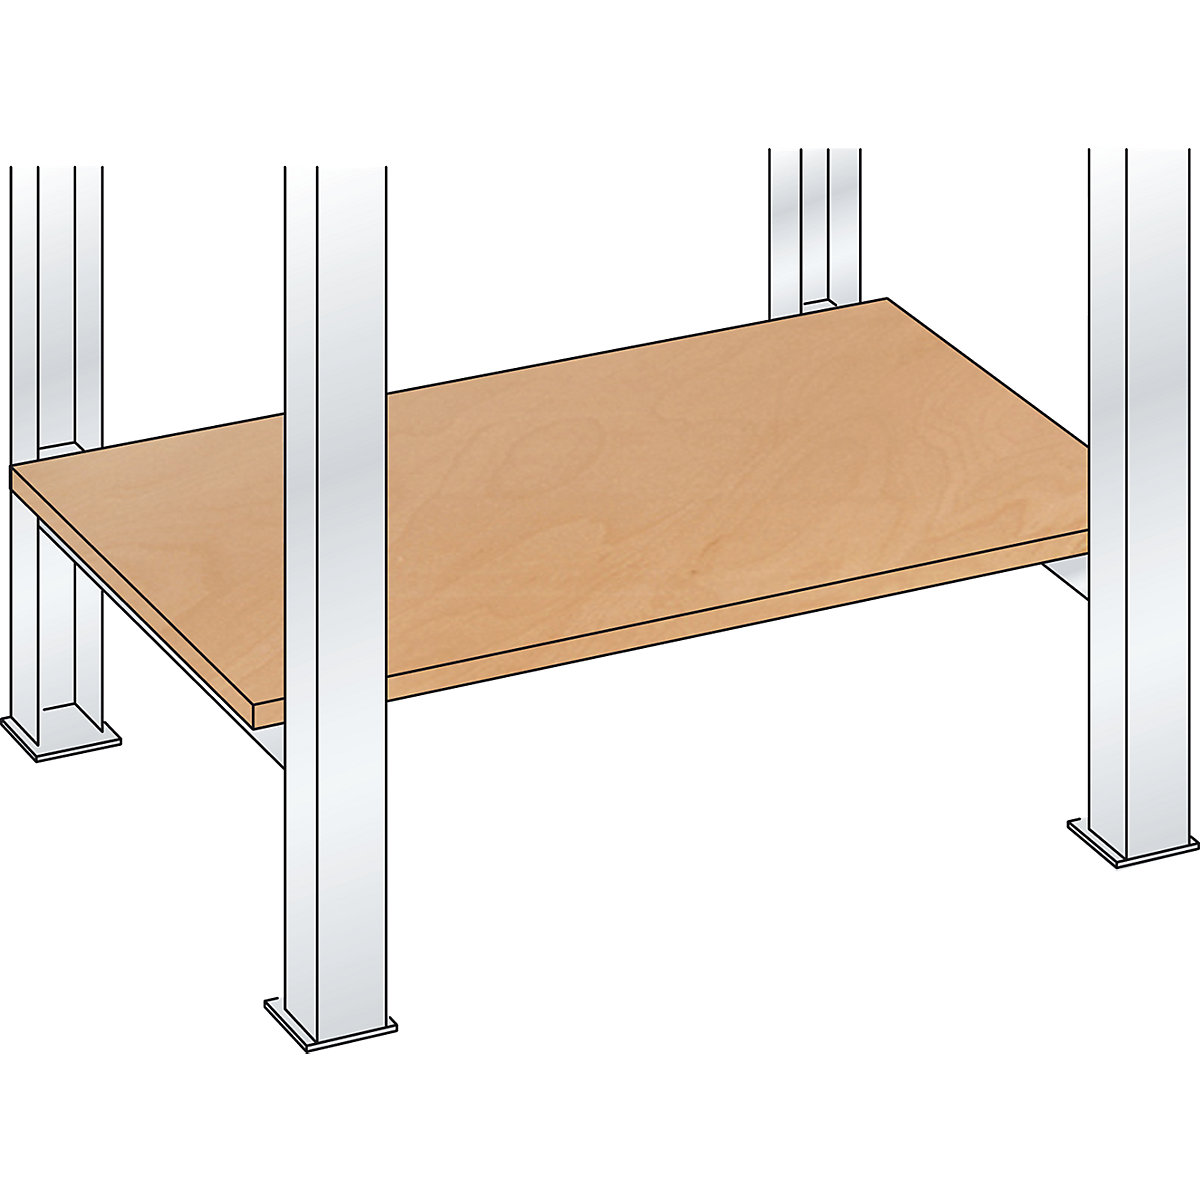 Stavebnicový systém pracovního stolu, odkládací police z překližky Multiplex – LISTA